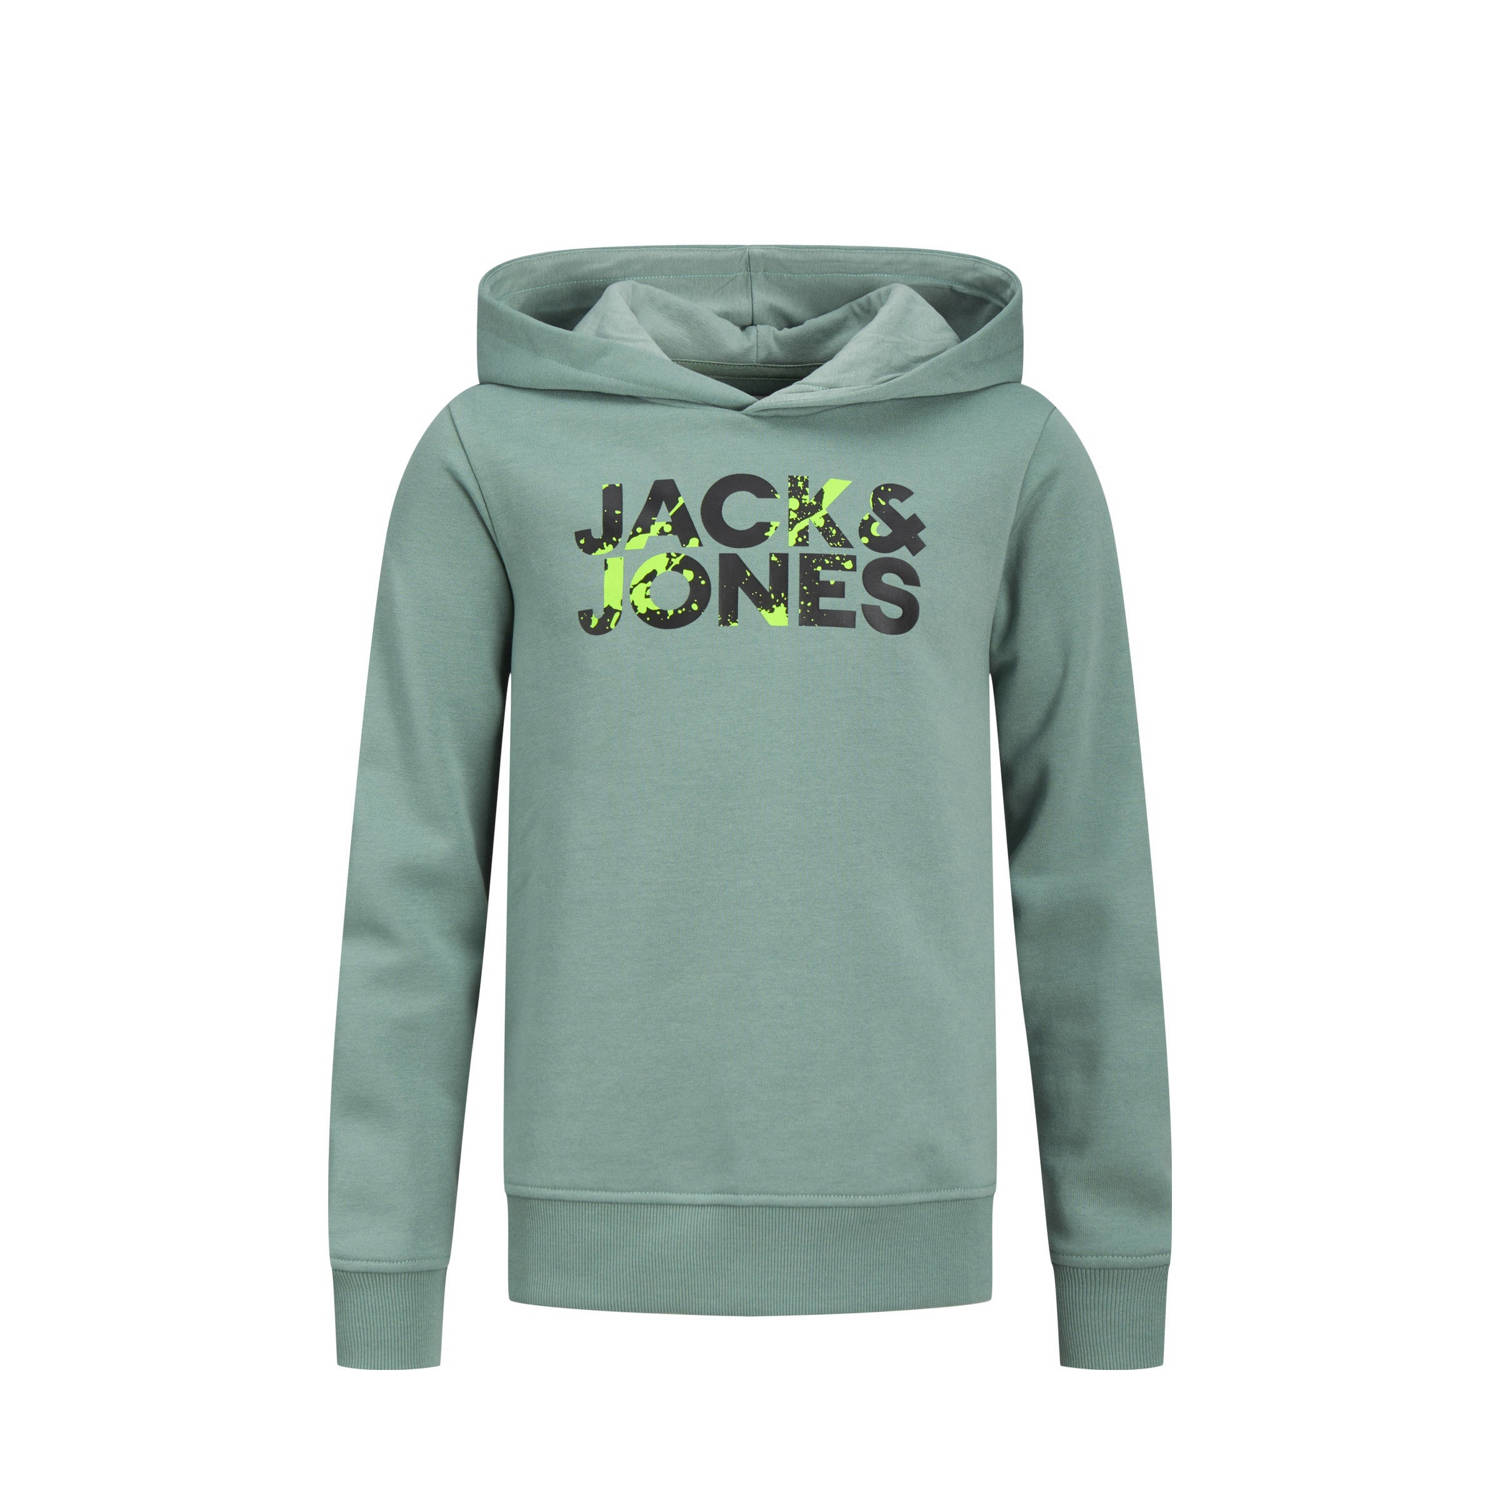 Jack & jones JUNIOR hoodie met logo zachtgroen Sweater Logo 128